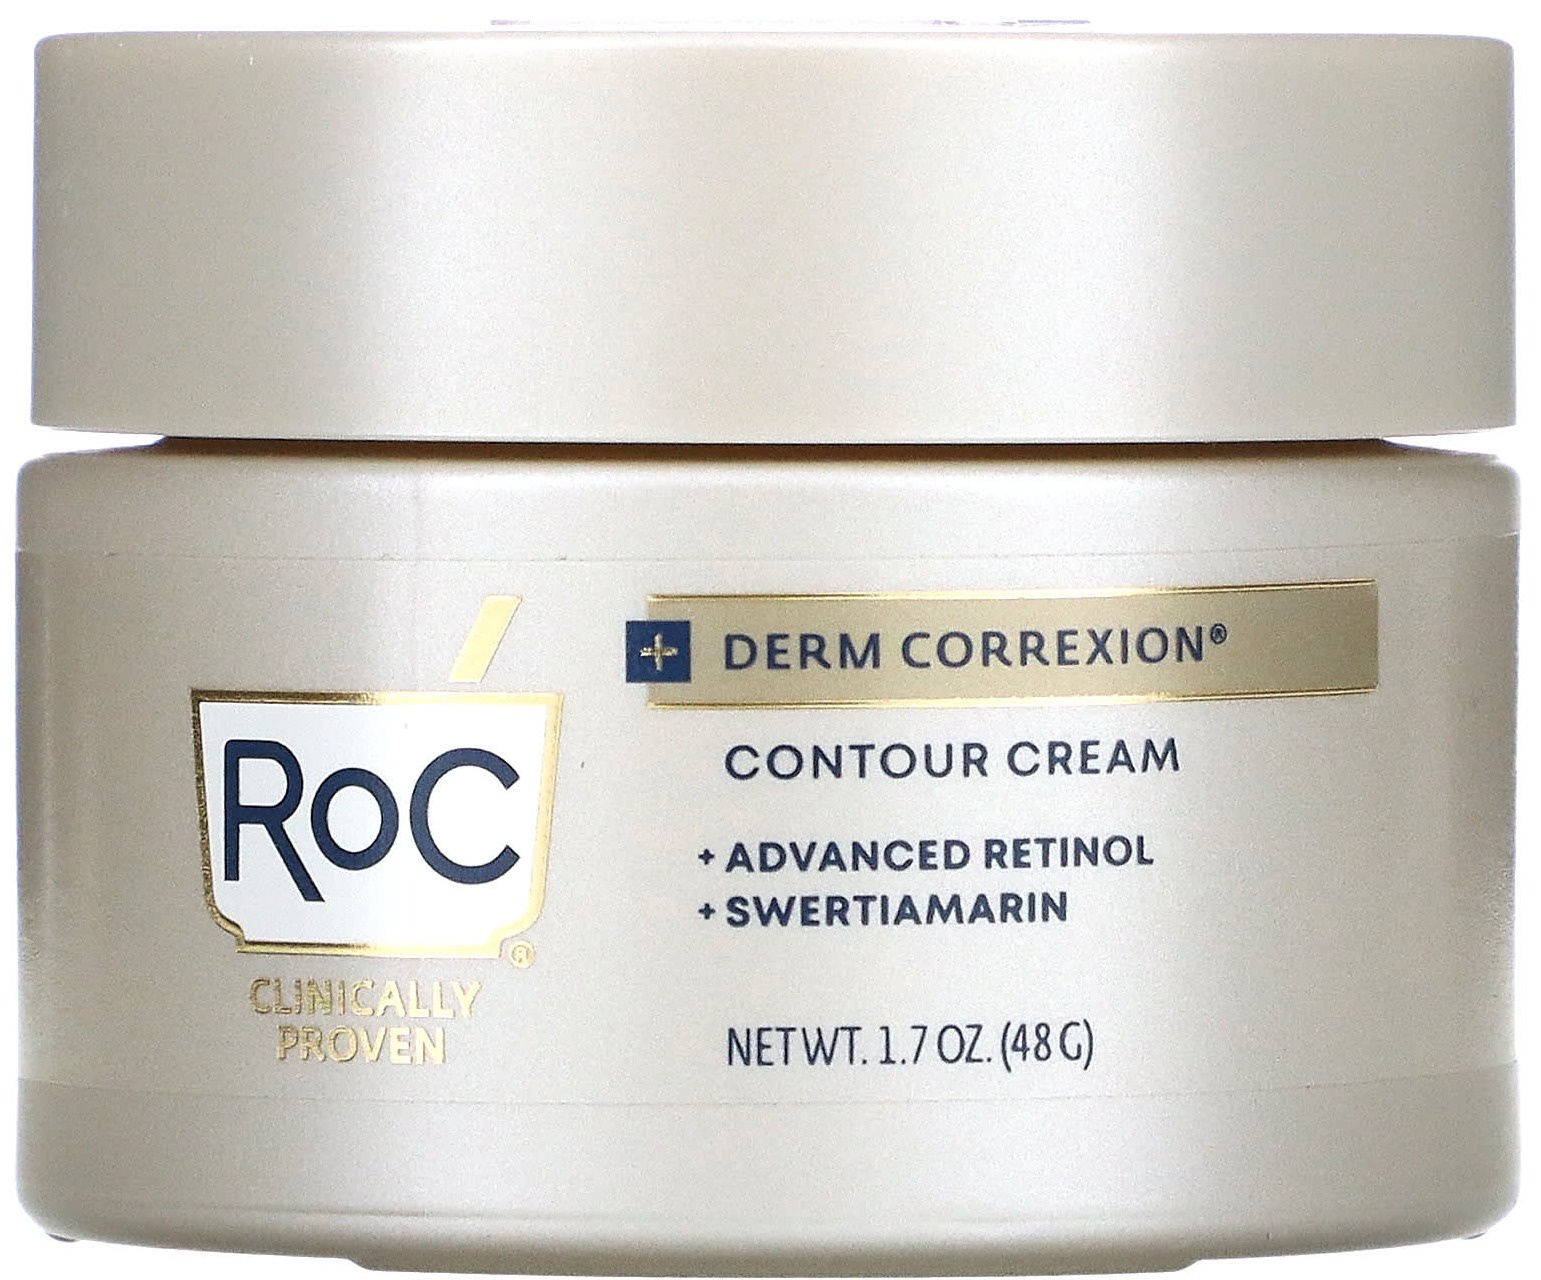 RoC Contour Cream